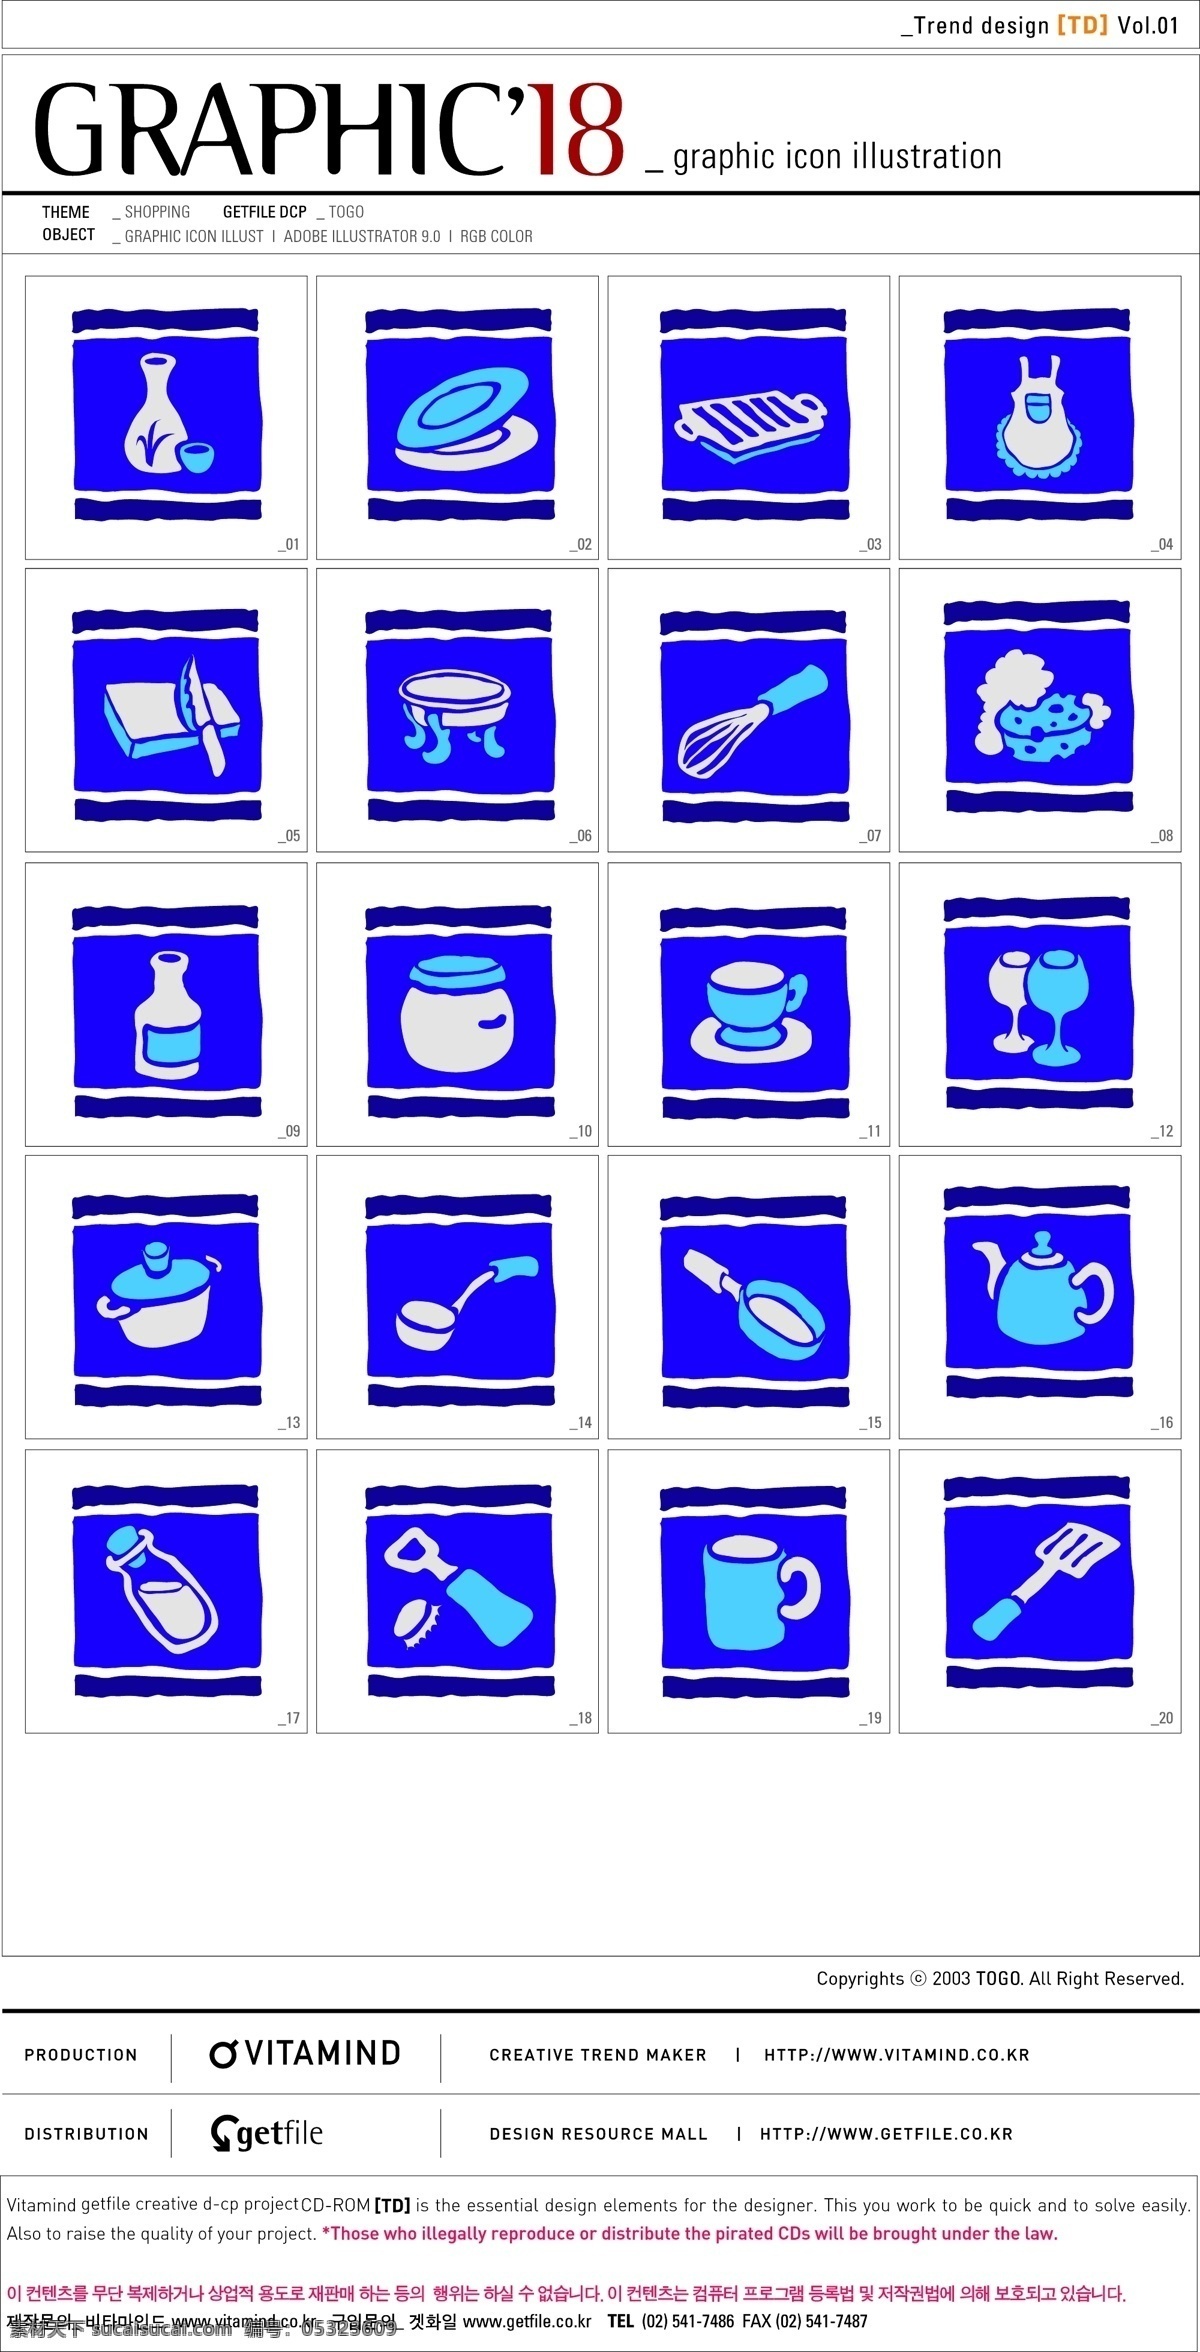 韩国 蓝色 方形 厨房用品 矢量 图标 套 系 标识cdr 环保cdr 卡通环保 矢量素材 标签标识 其他矢量图